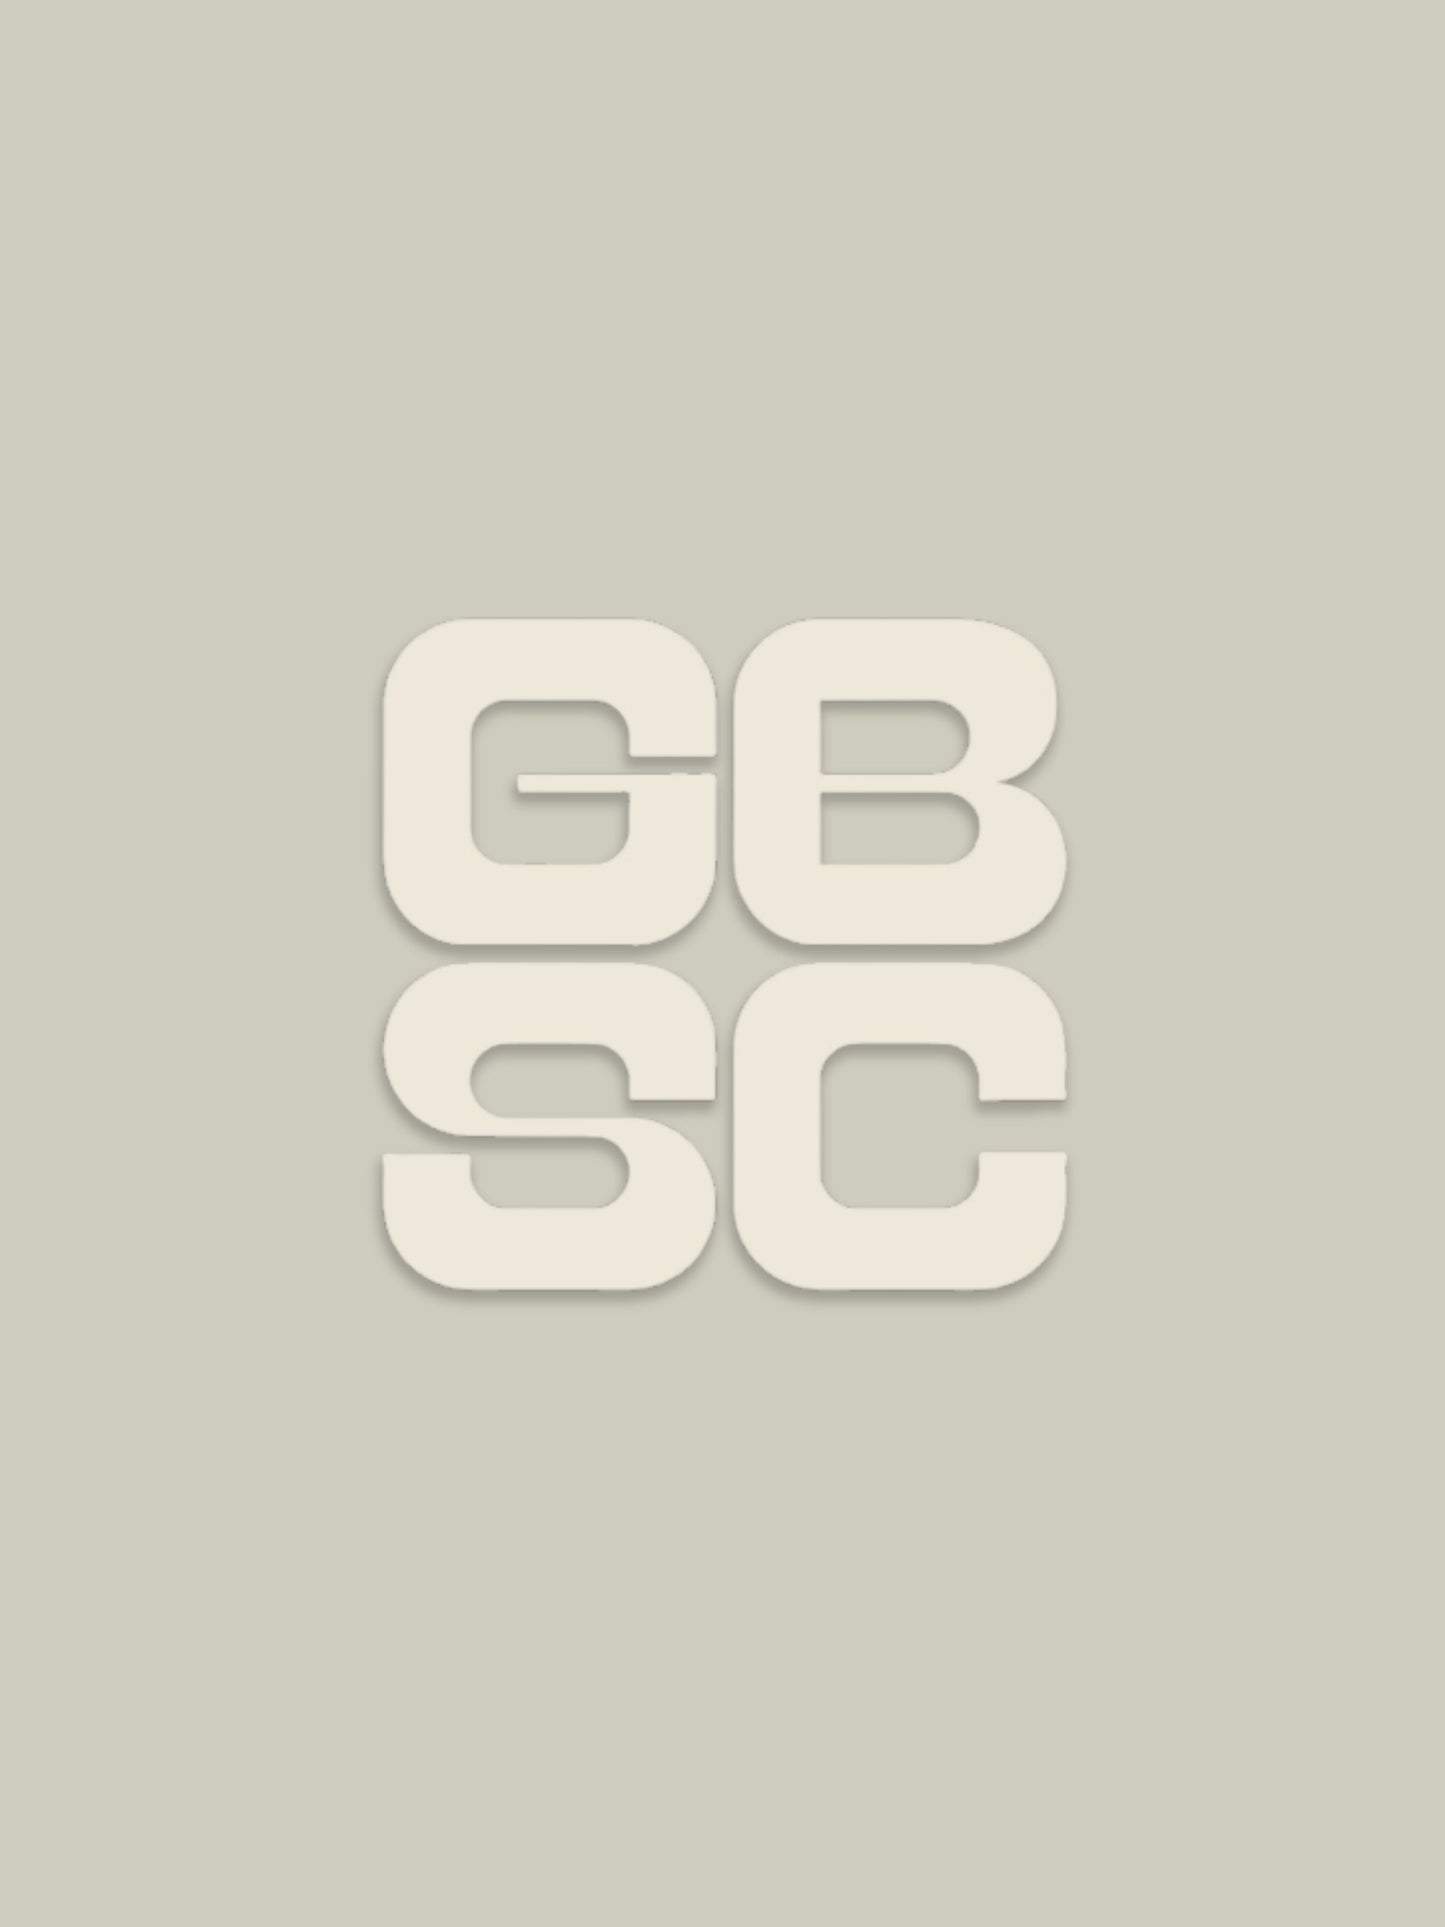 GBSC Surfboard Sticker